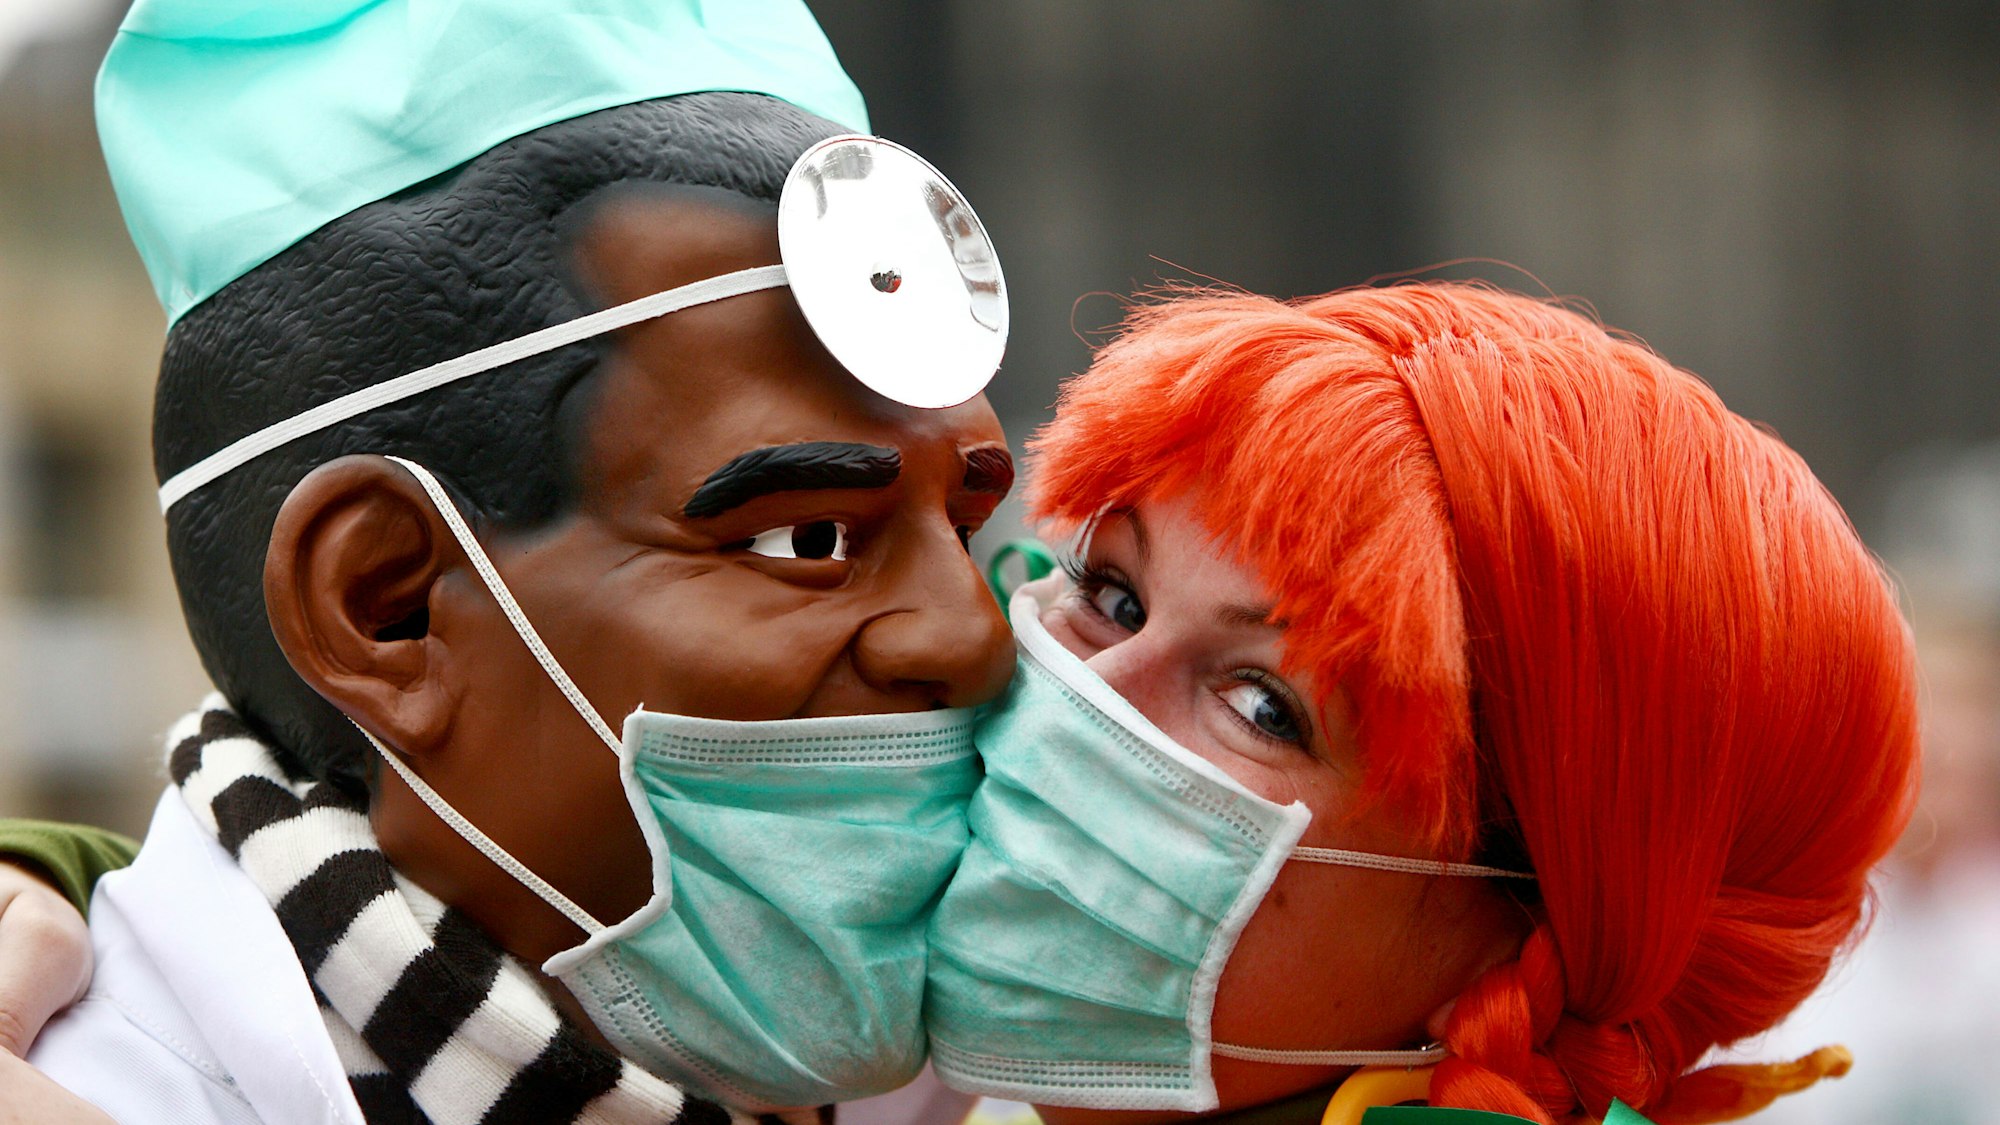 Zwei Narren "bützen" (küssen) sich am Mittwoch (11.11.2009) in Köln aus Angst vor einer Ansteckung mit der Schweingrippe mit Schutzmasken. Schlag 11 Uhr 11 hat in den rheinischen Karnevalshochburgen die fünfte Jahreszeit begonnen.